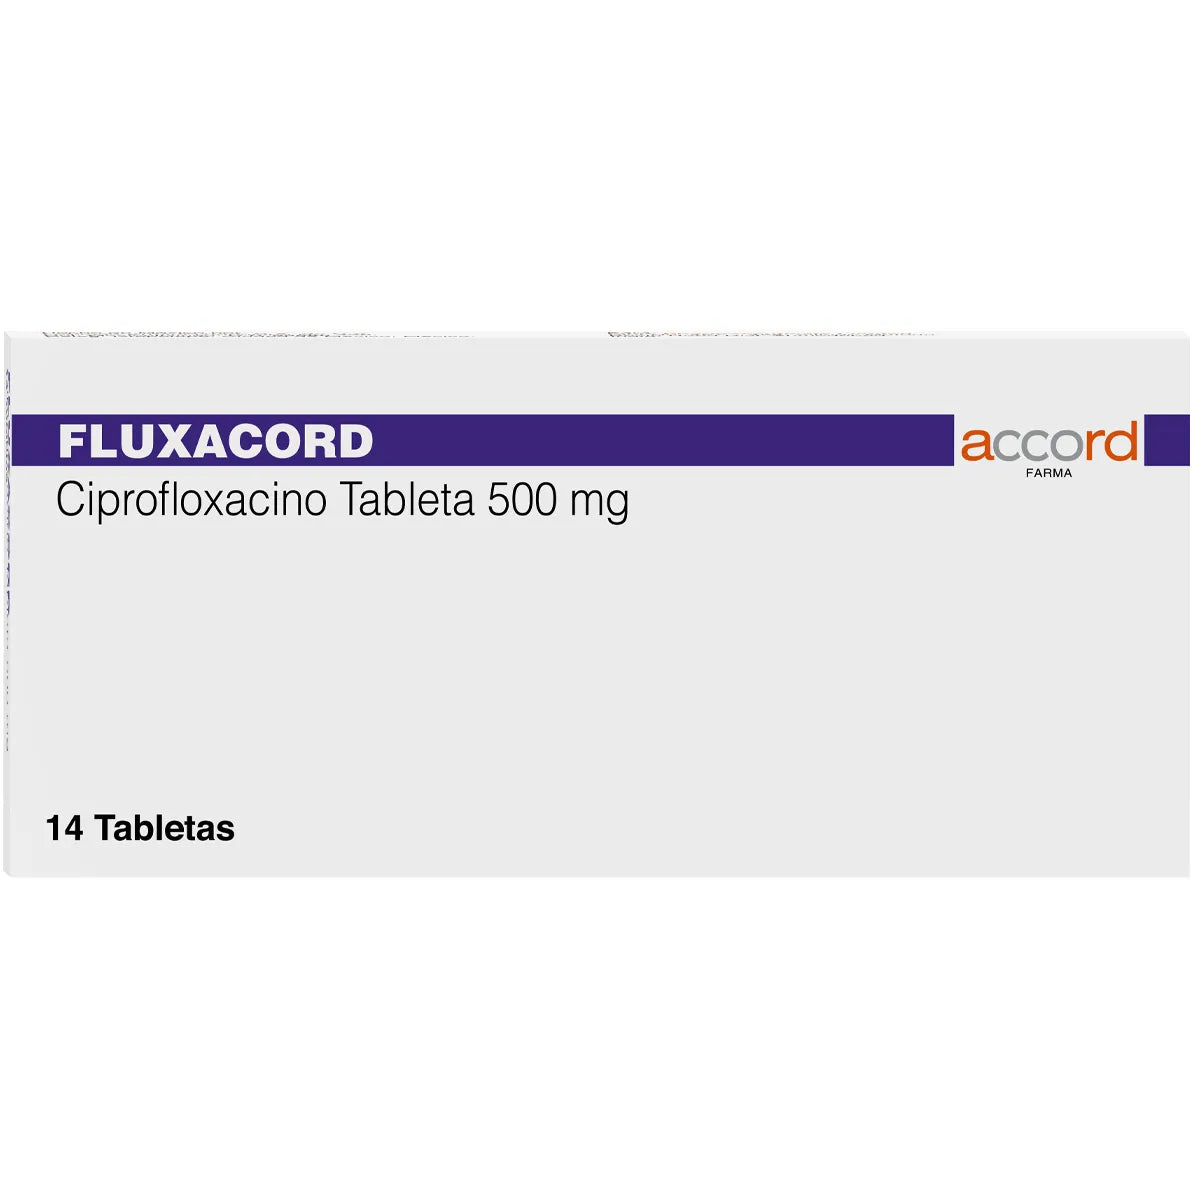 Fluxacord Ciprofloxacino 500 mg con 14 tabletas